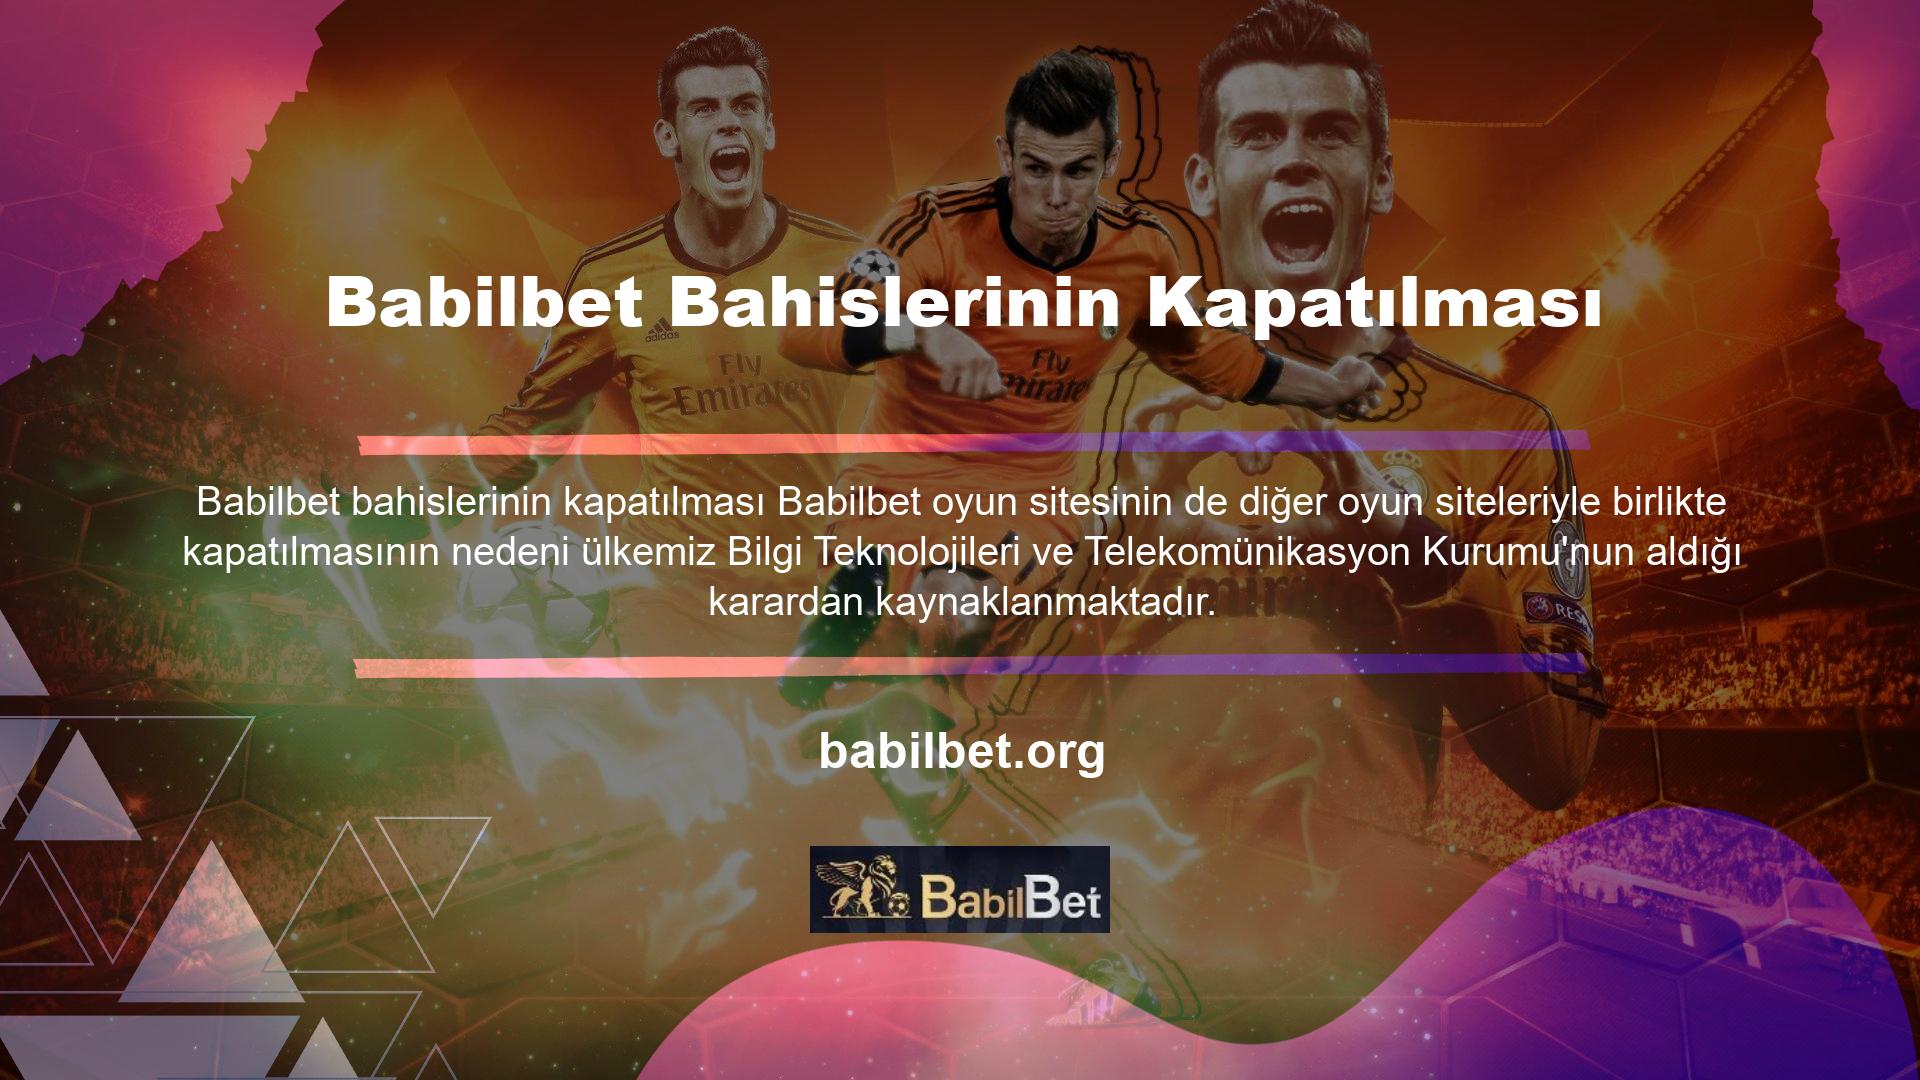 Babilbet oyun sitesinin de diğer oyun siteleriyle birlikte kapatılmasının nedeni ülkemiz Bilgi Teknolojileri ve Telekomünikasyon Kurumu'nun aldığı karardan kaynaklanmaktadır